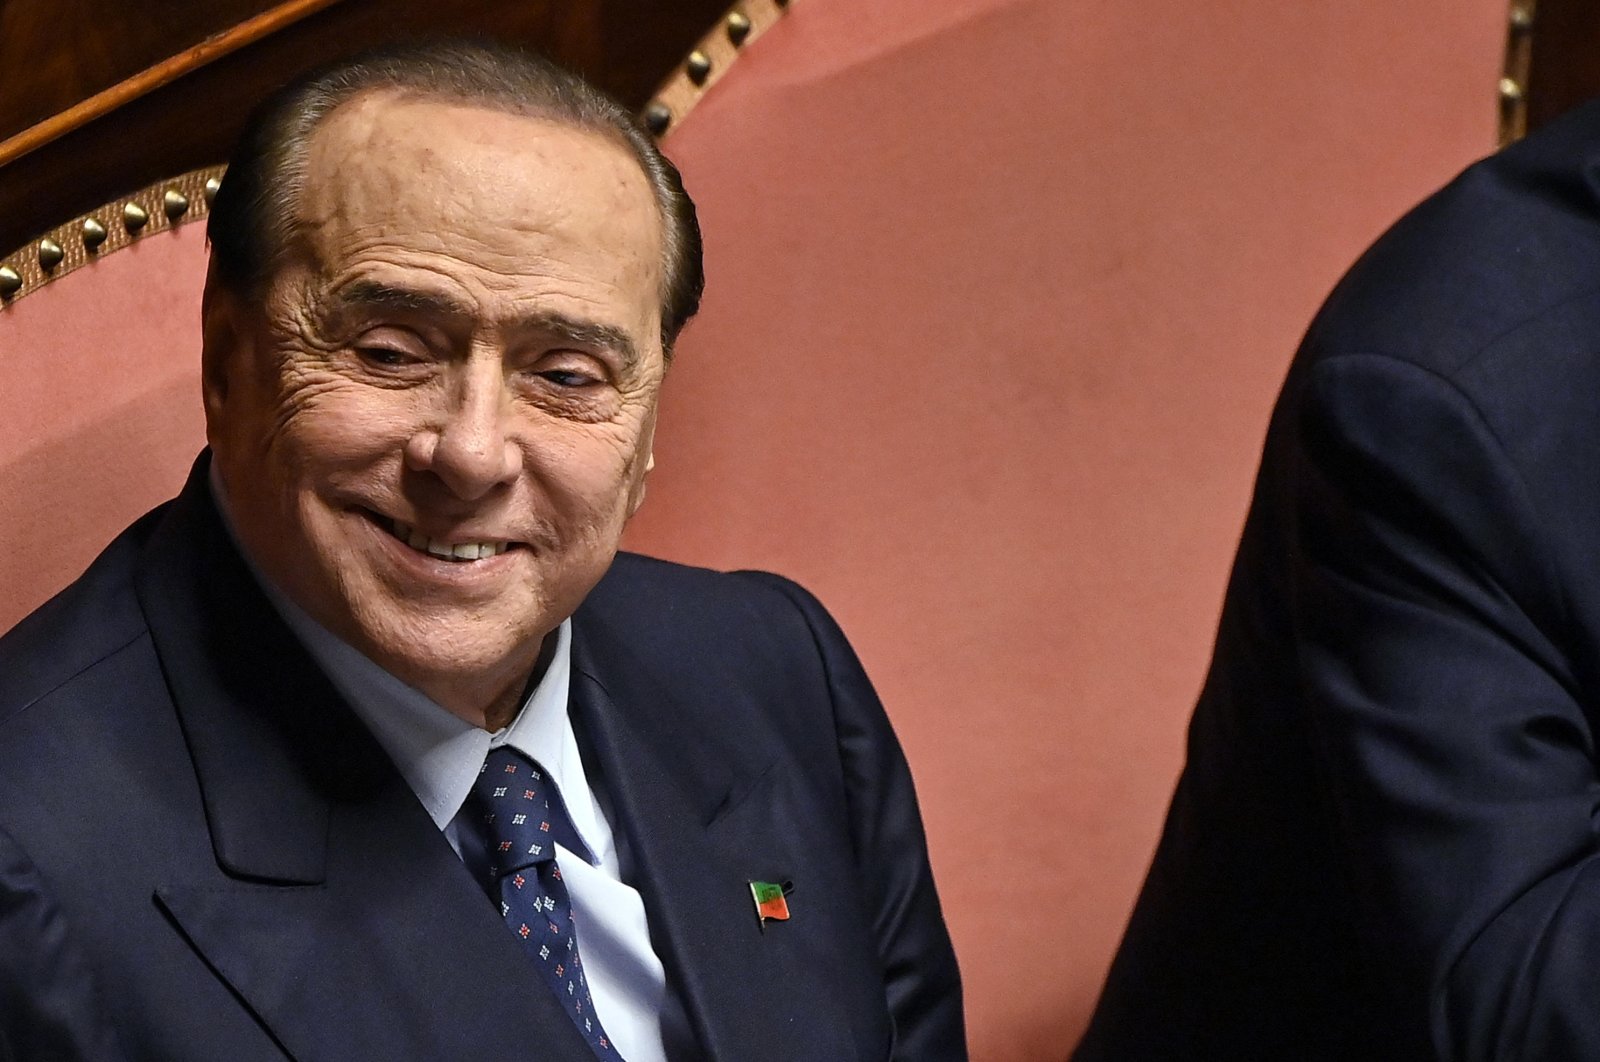 Forza Italia leader Silvio Berlusconi at the Senate in Rome, Italy, Oct. 26, 2022. (EPA Photo)